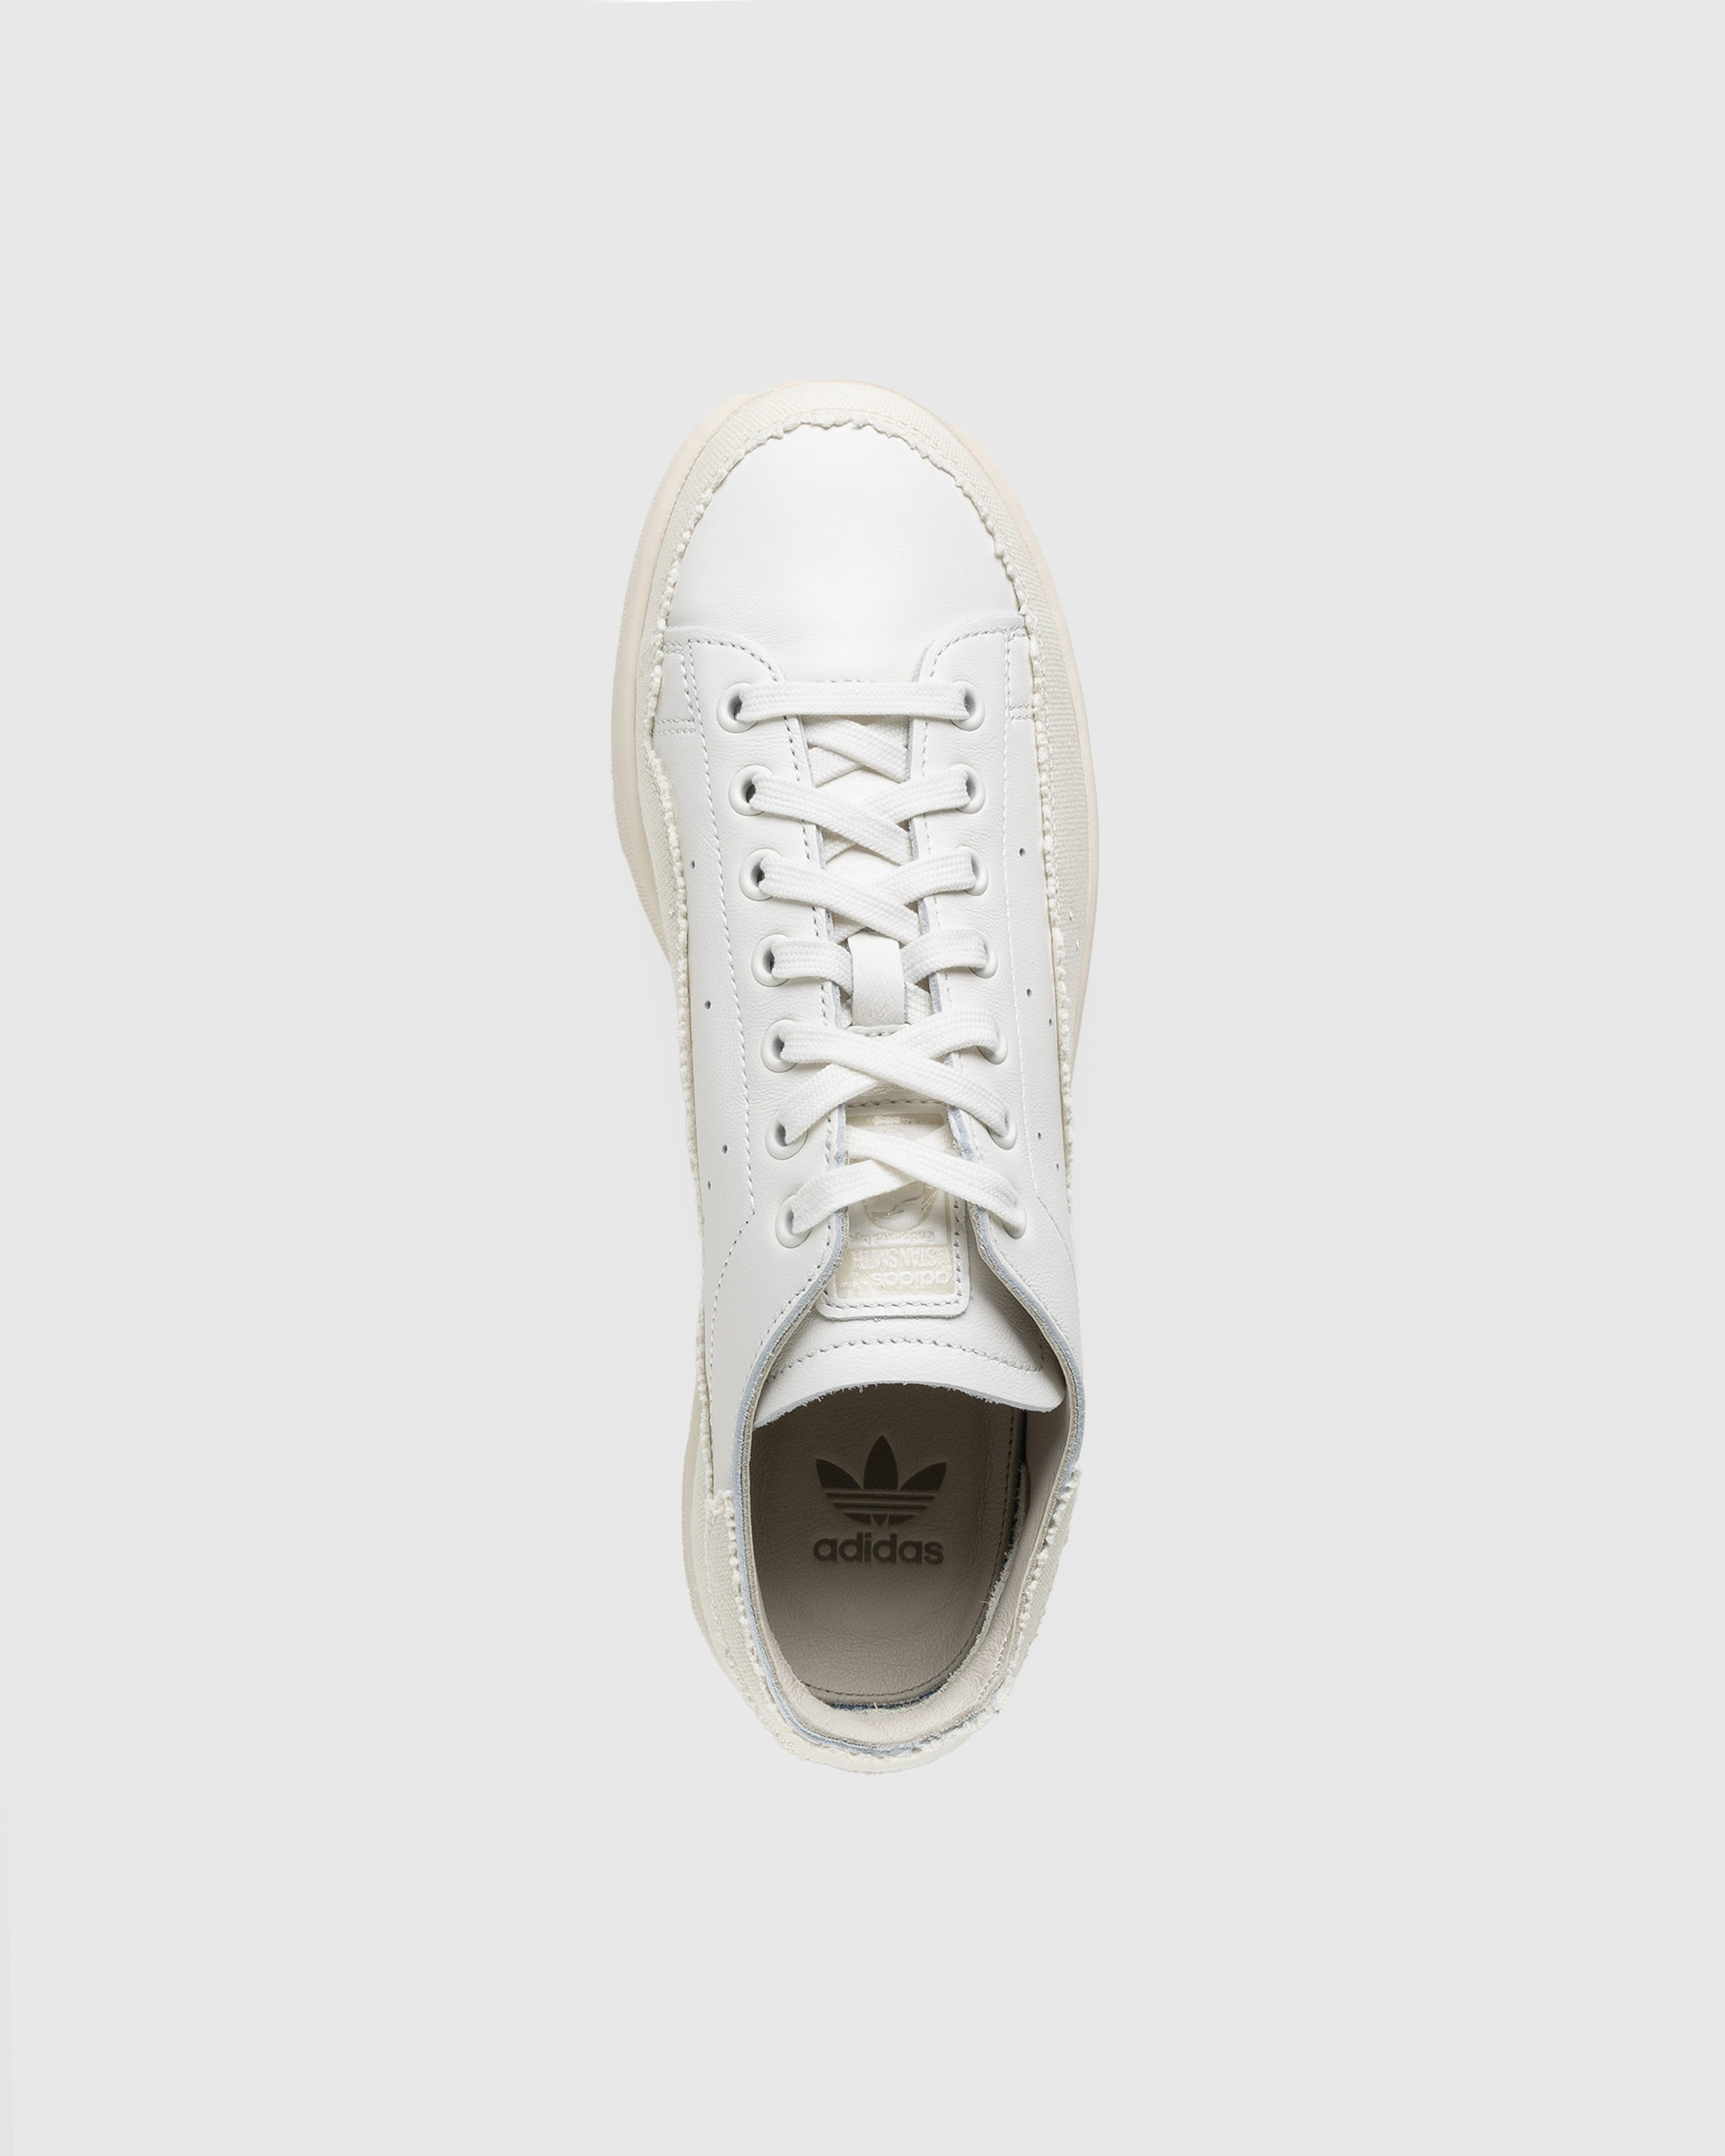 Adidas – Stan Smith Recon White - Sneakers - White - Image 5